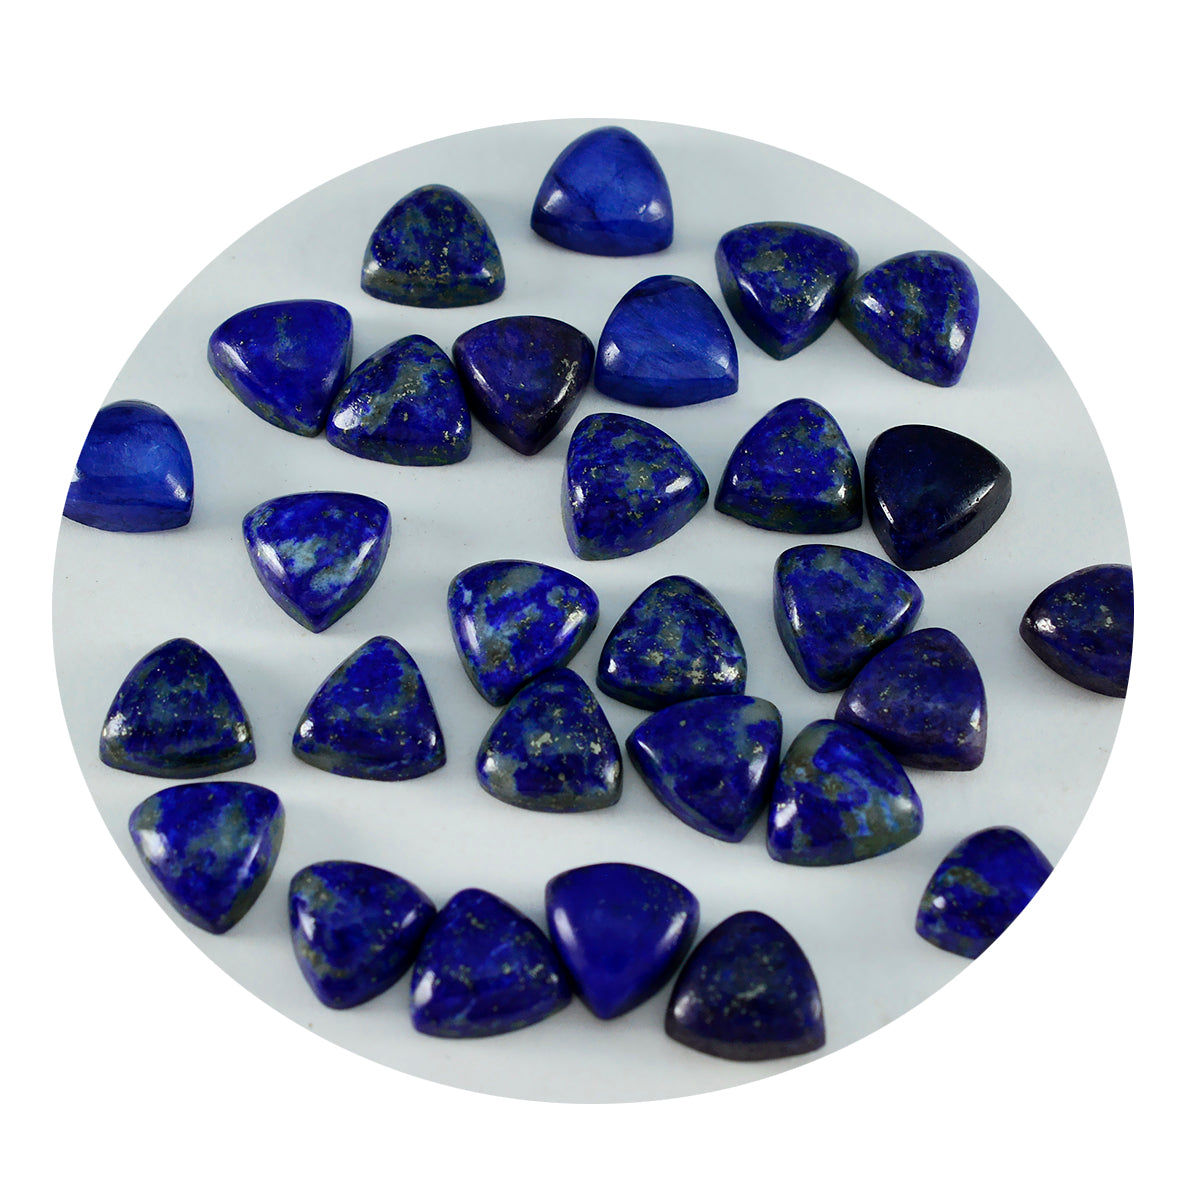 Riyogems, 1 pieza, cabujón de lapislázuli azul, 7x7mm, forma de billón, piedra suelta de calidad atractiva